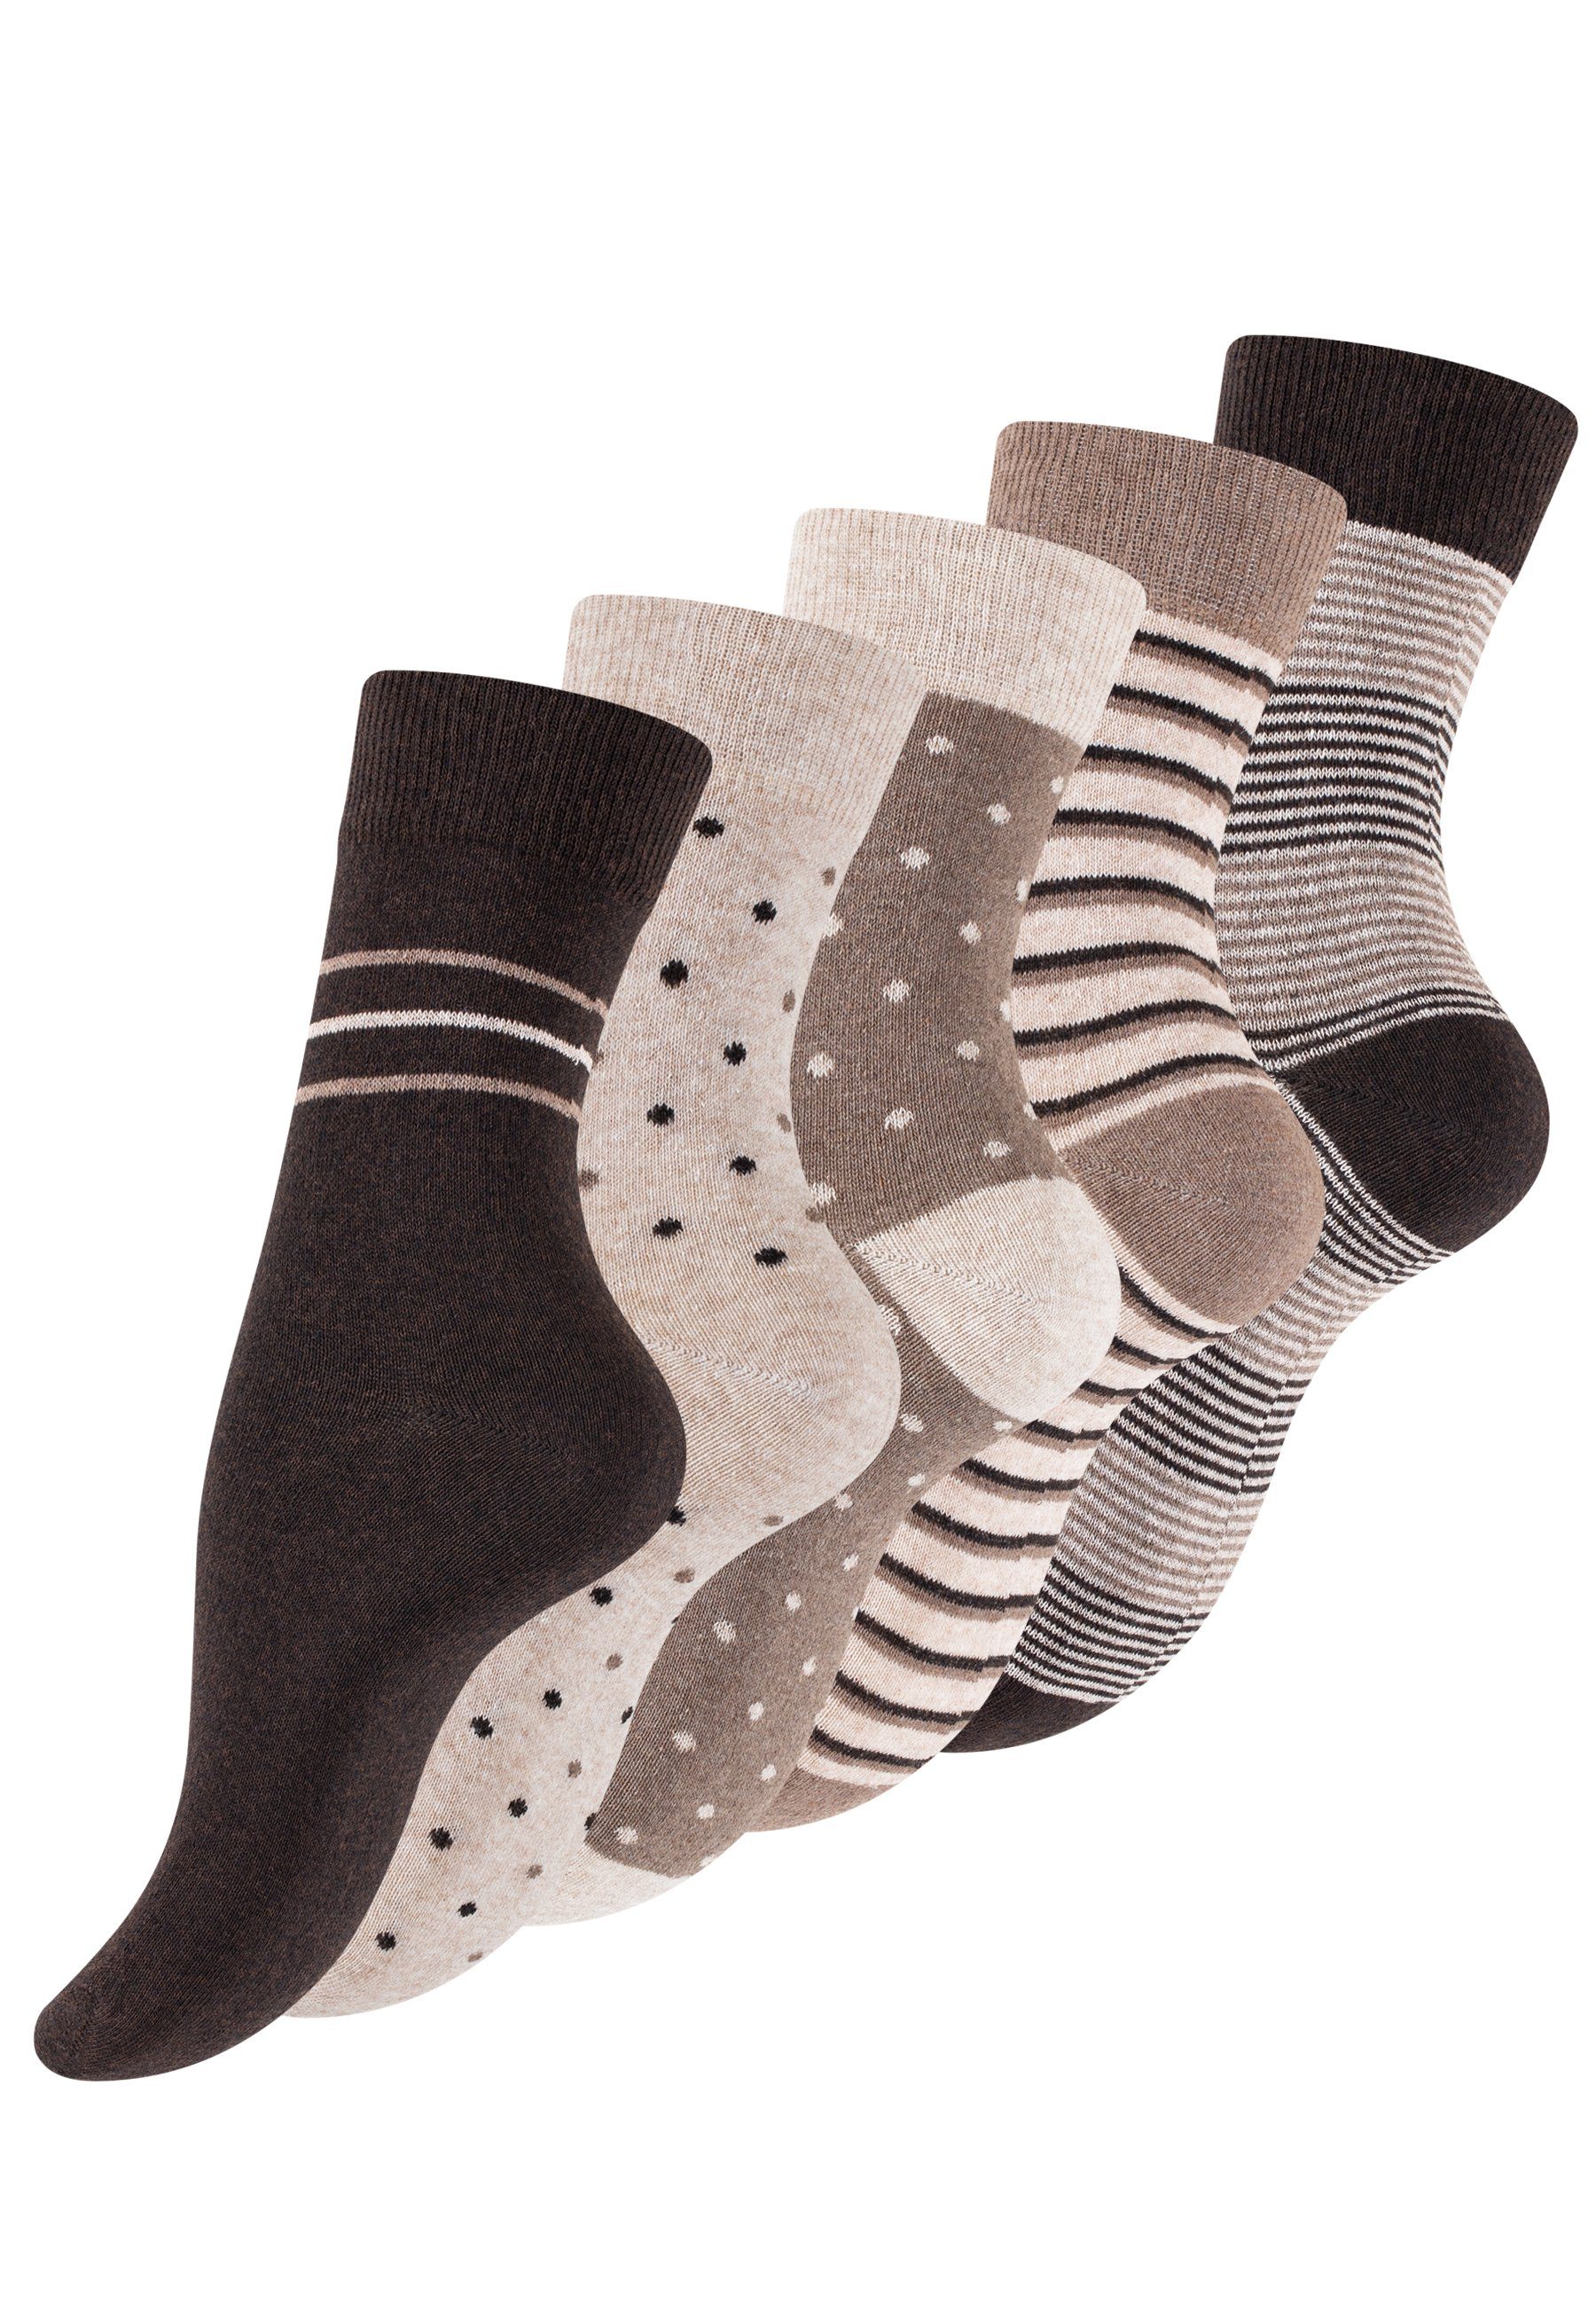 Vincent Creation® Socken (10-Paar) in angenehmer Baumwollqualität braun/beige